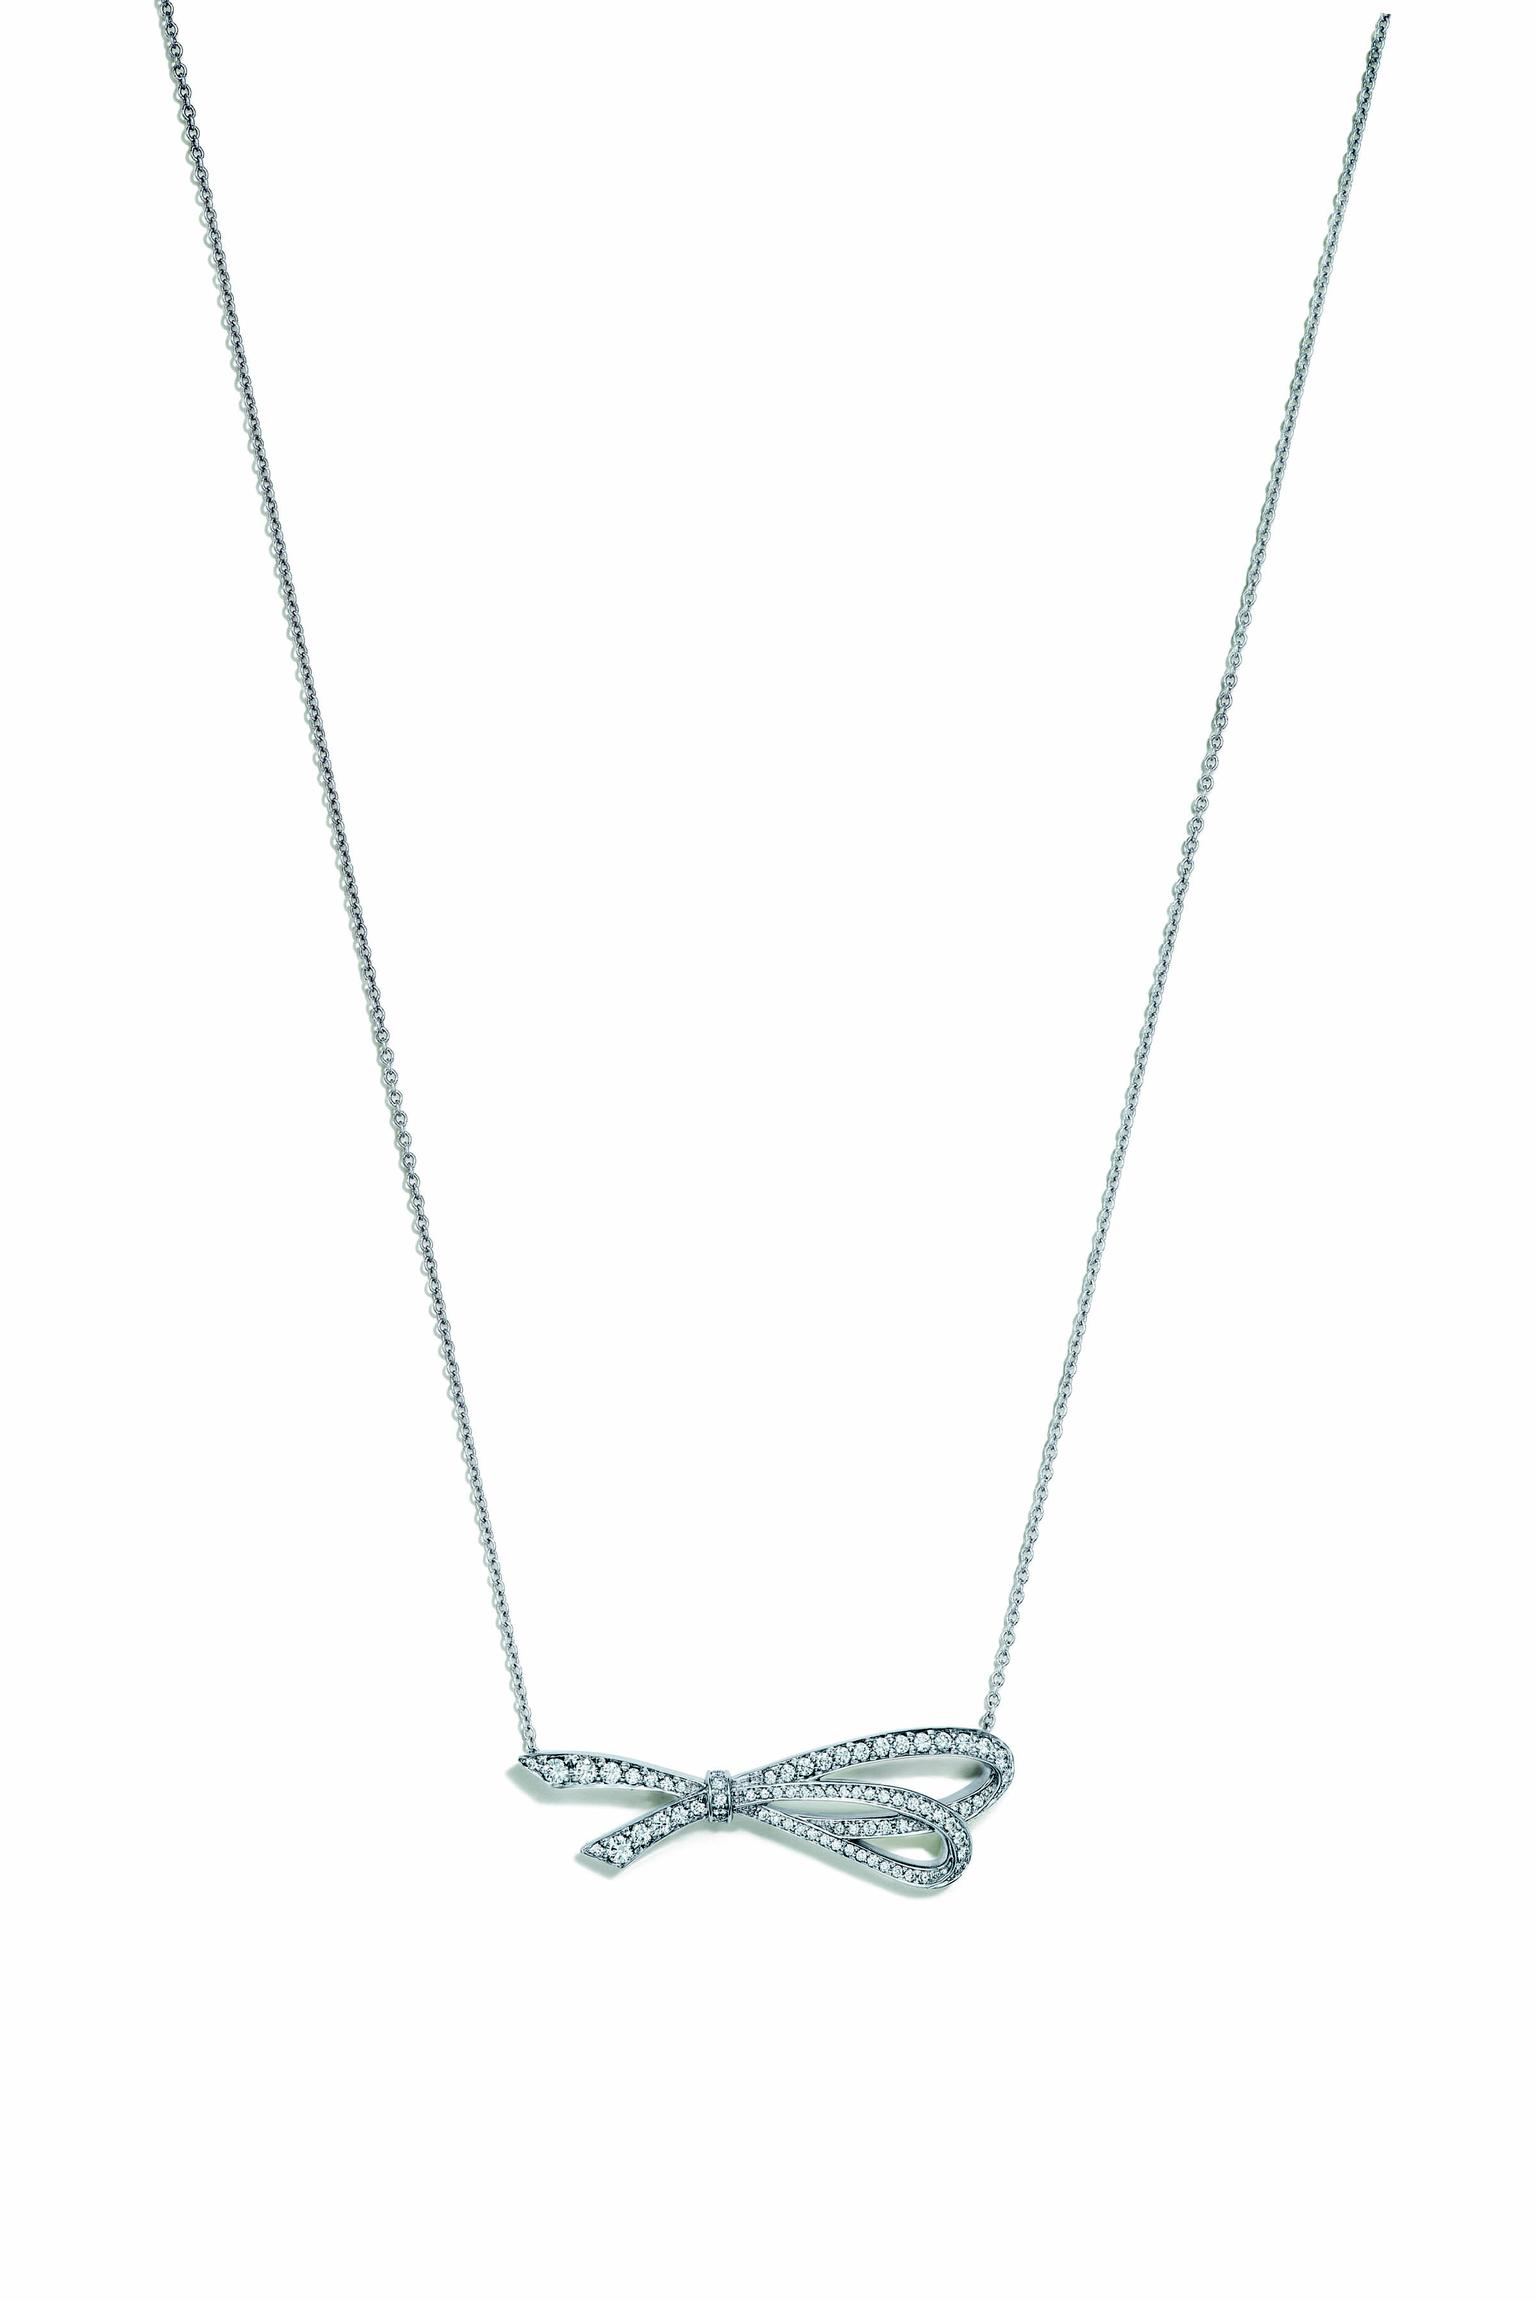 tiffany bow necklace